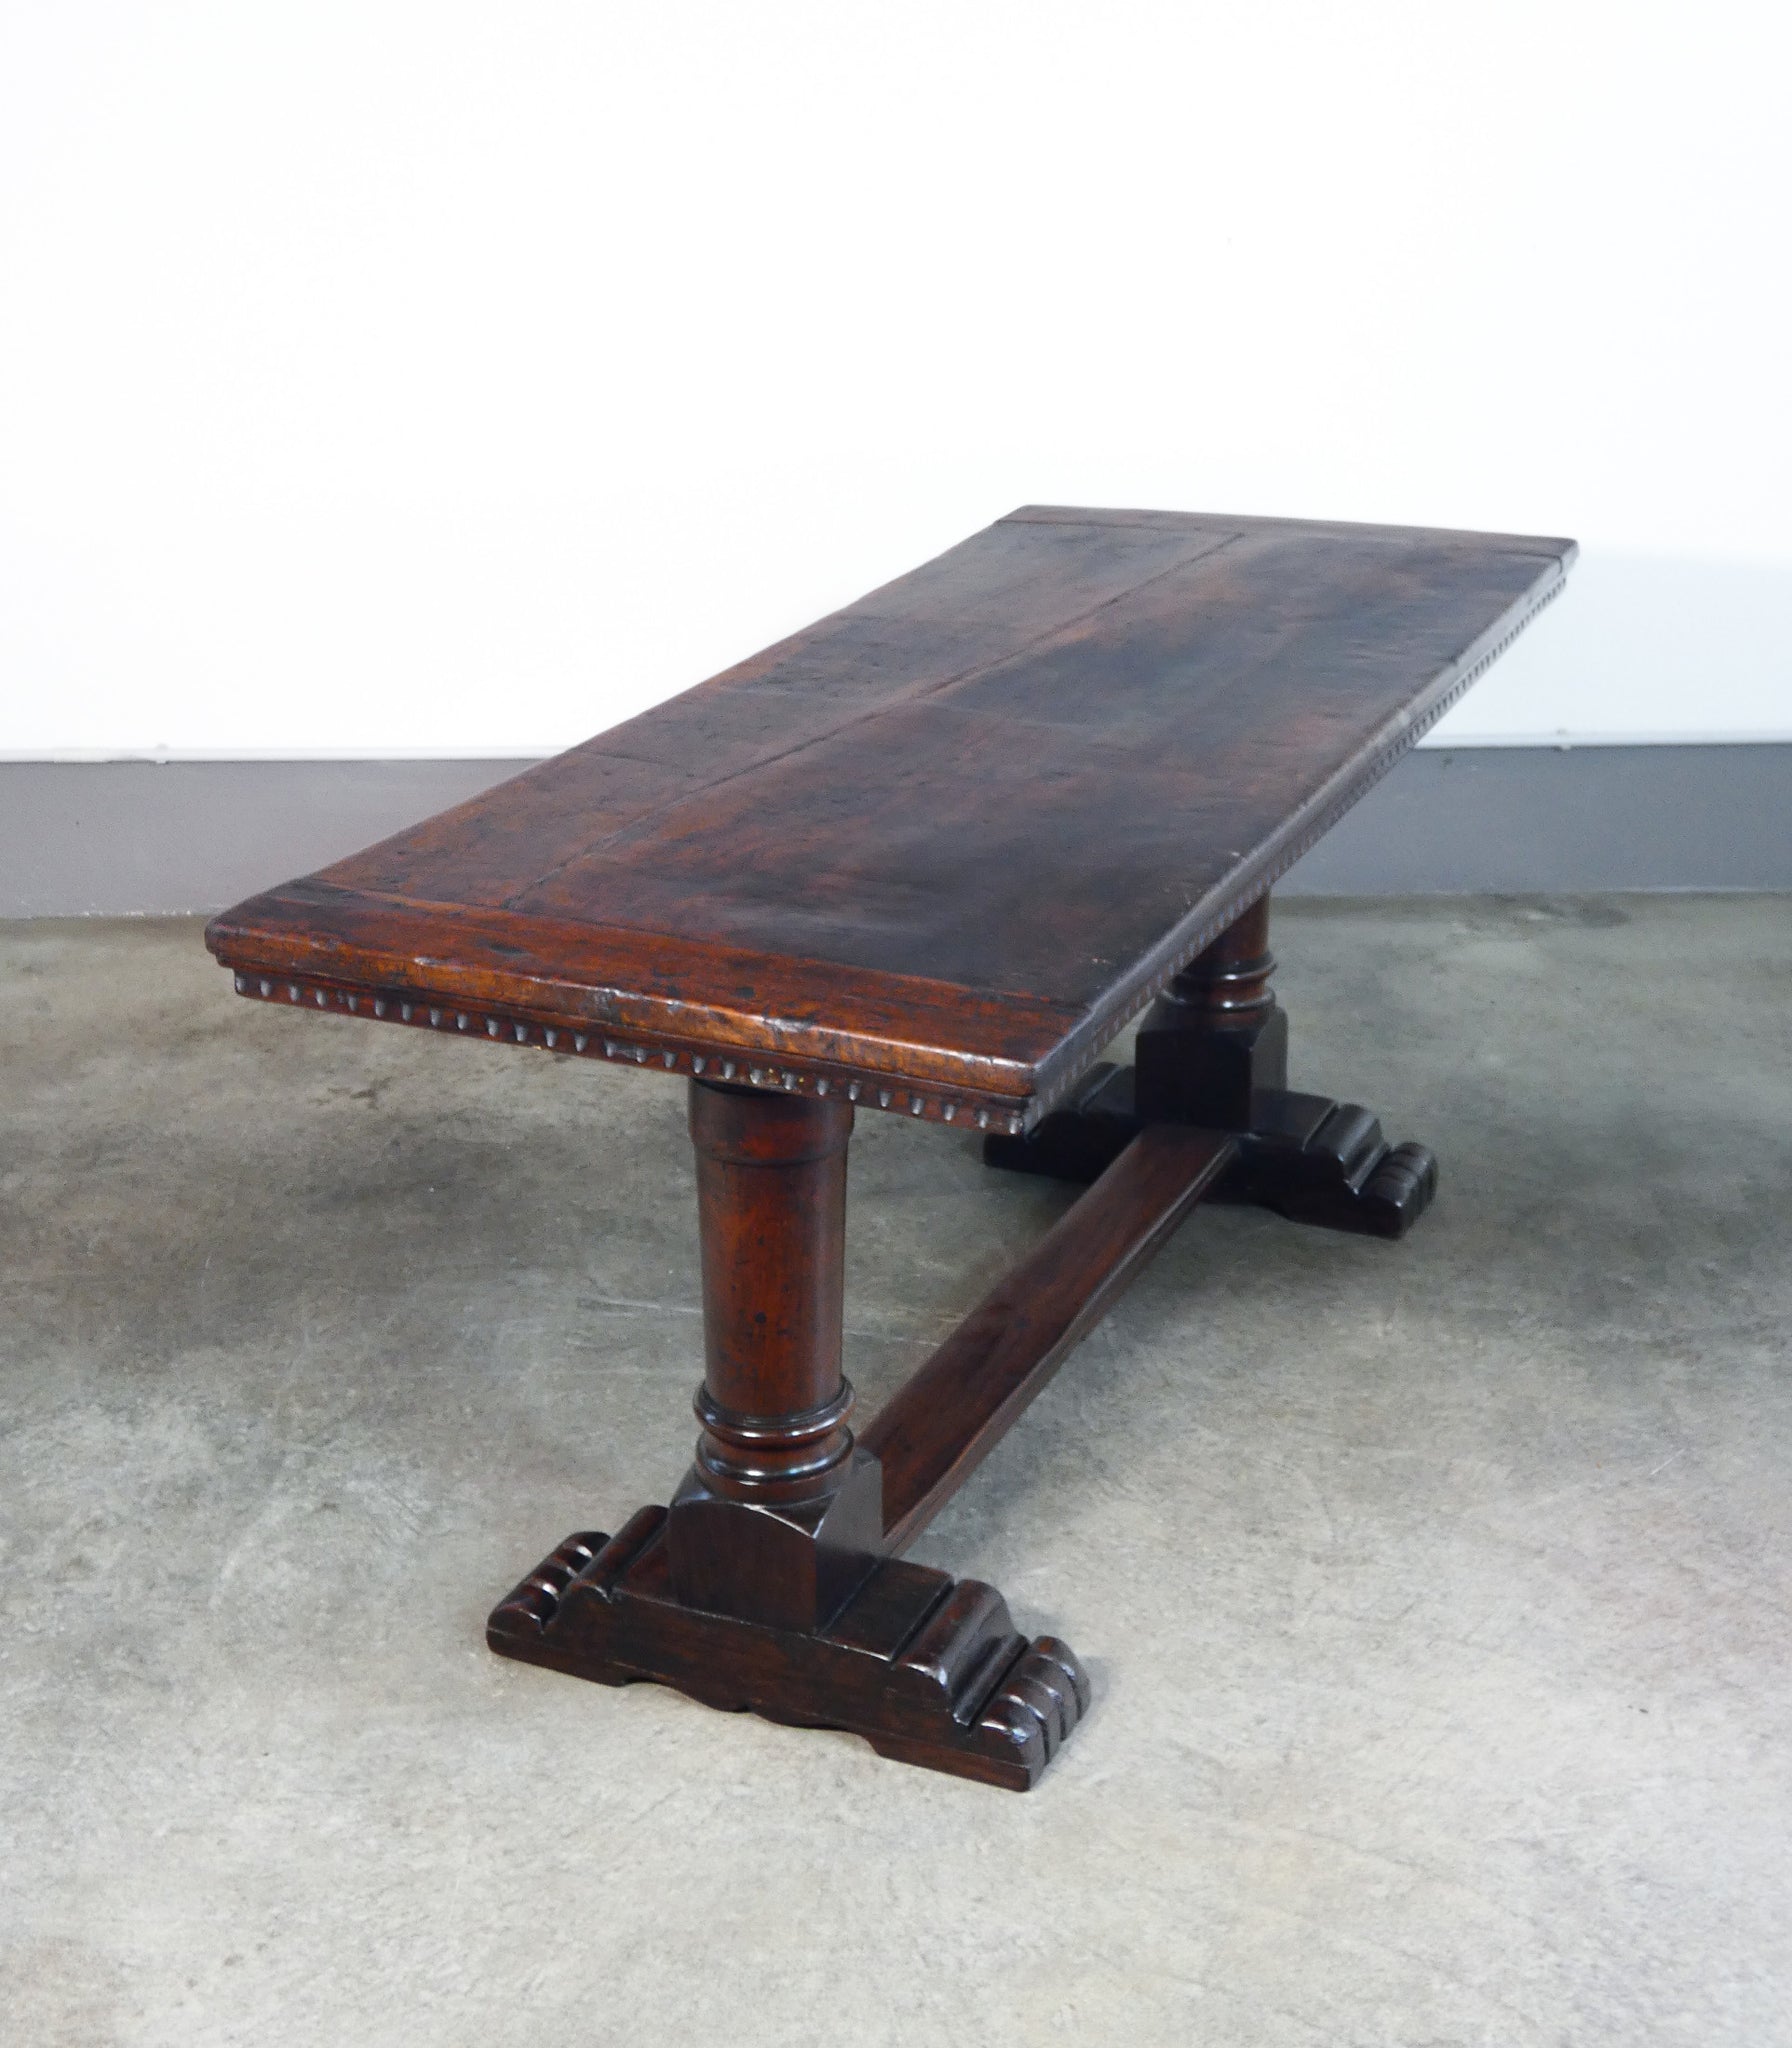 tavolo piano epoca 1700 legno massello noce fratino gambe a colonna antico